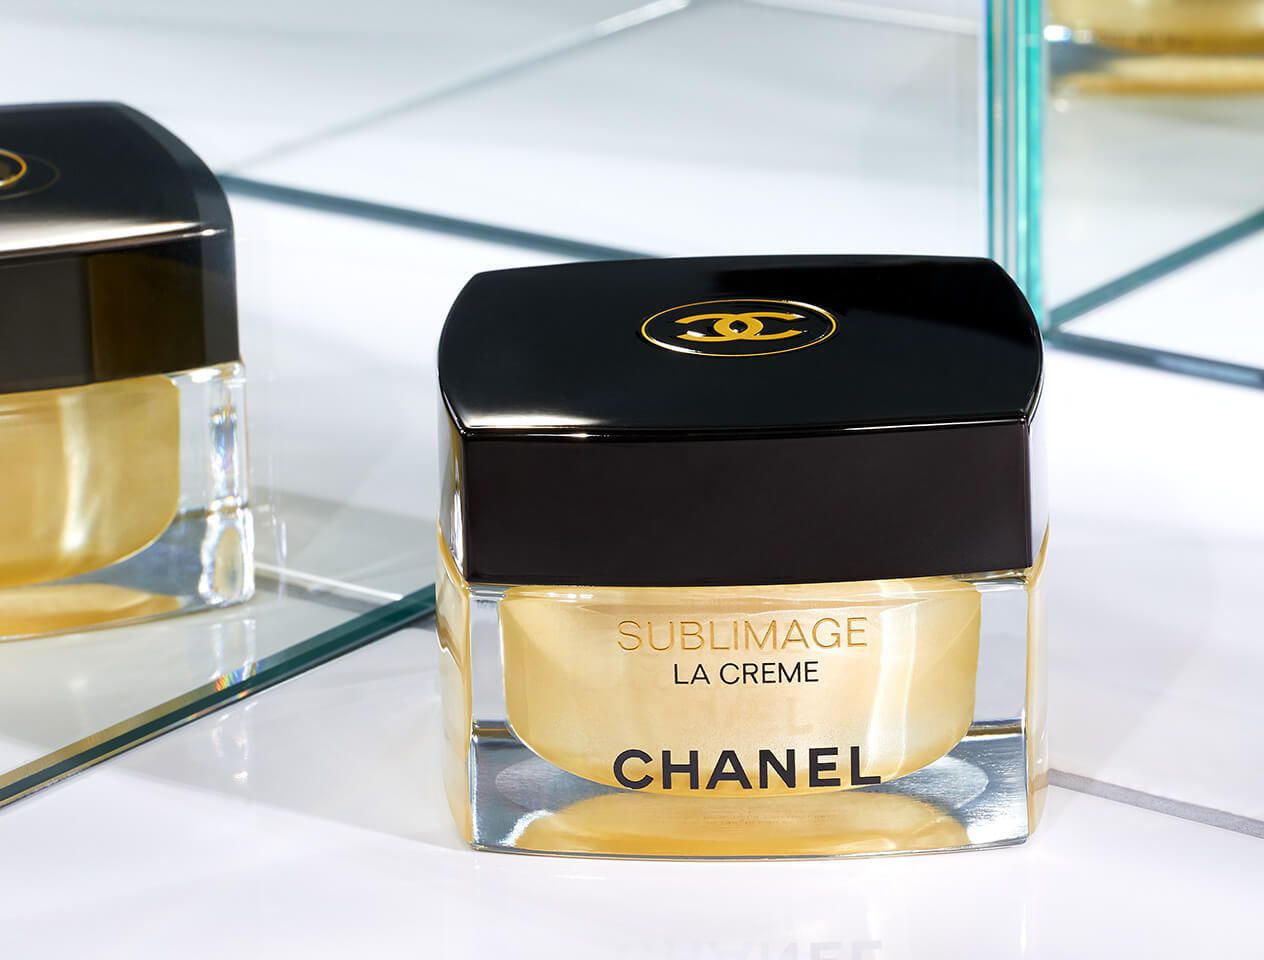 Chanel Sublimage La Creme